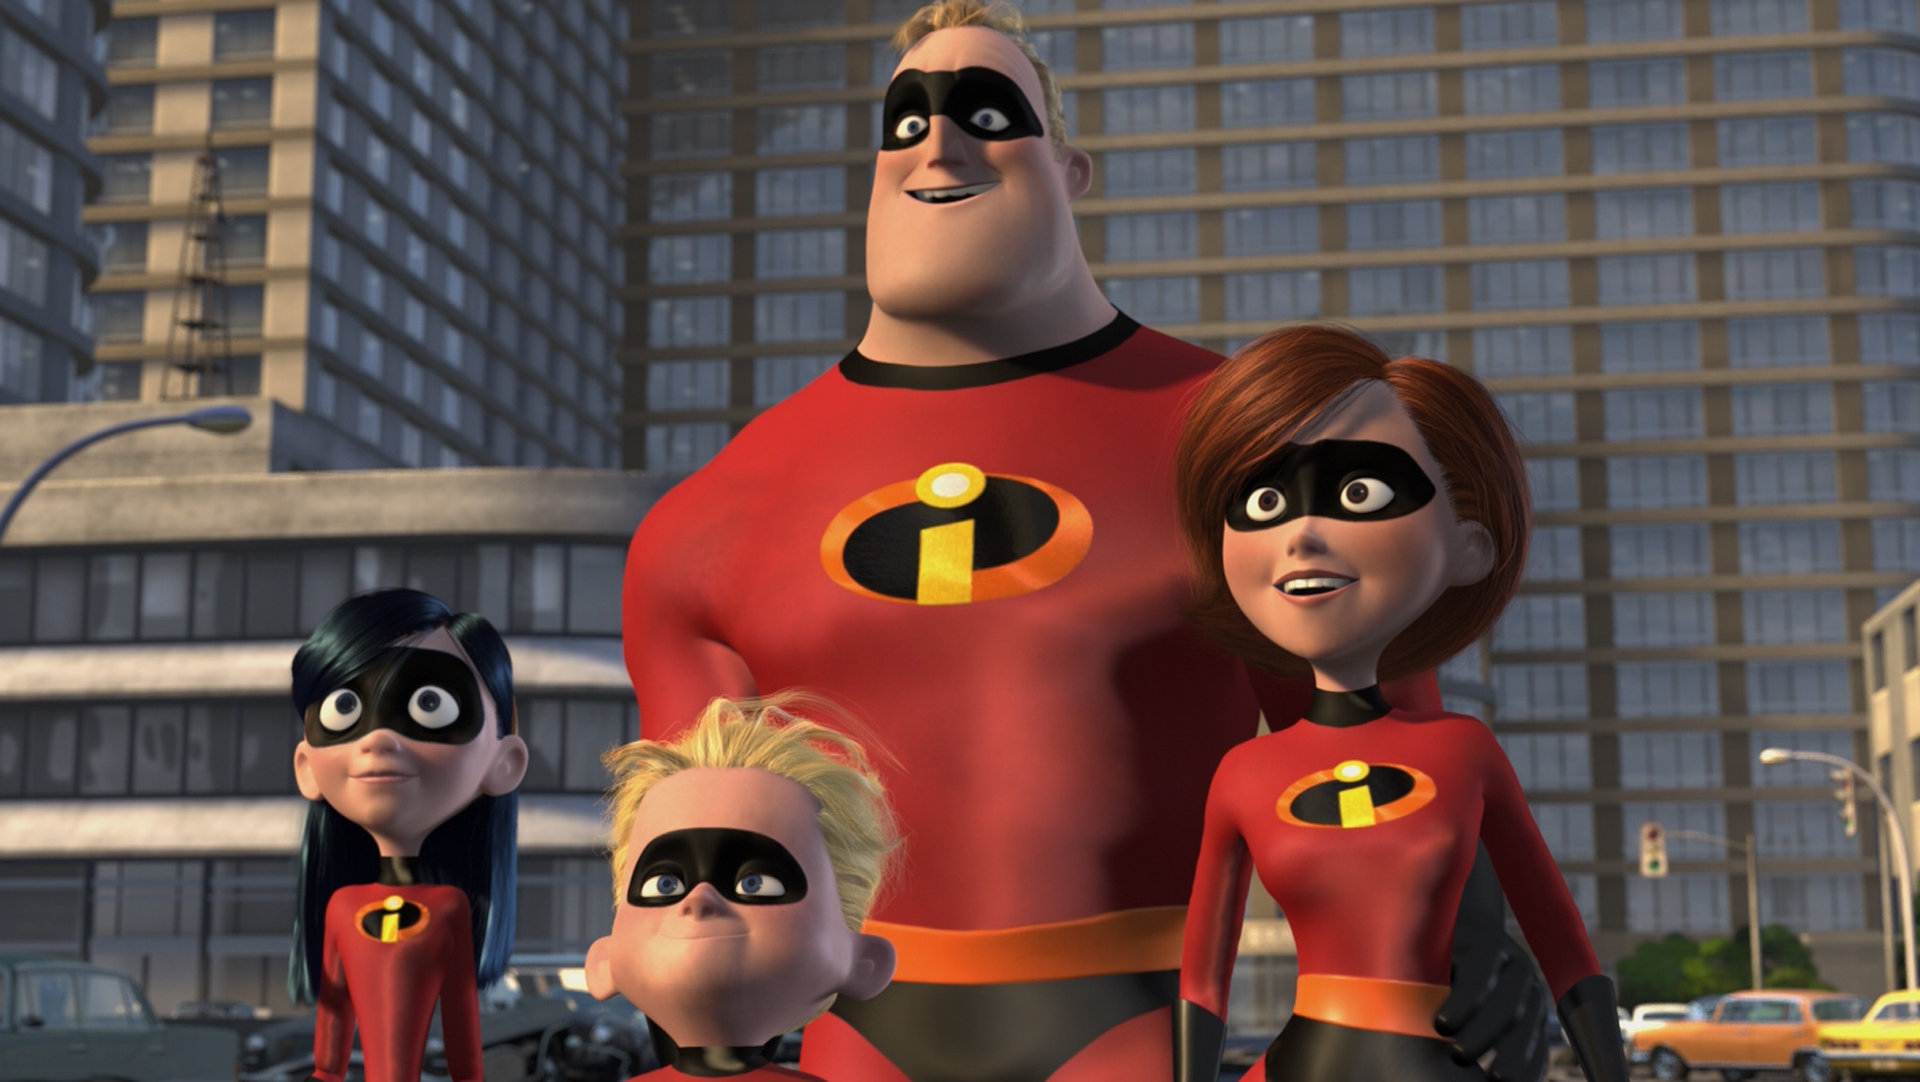 Επιτέλους, βγήκε trailer για το “The Incredibles 2”